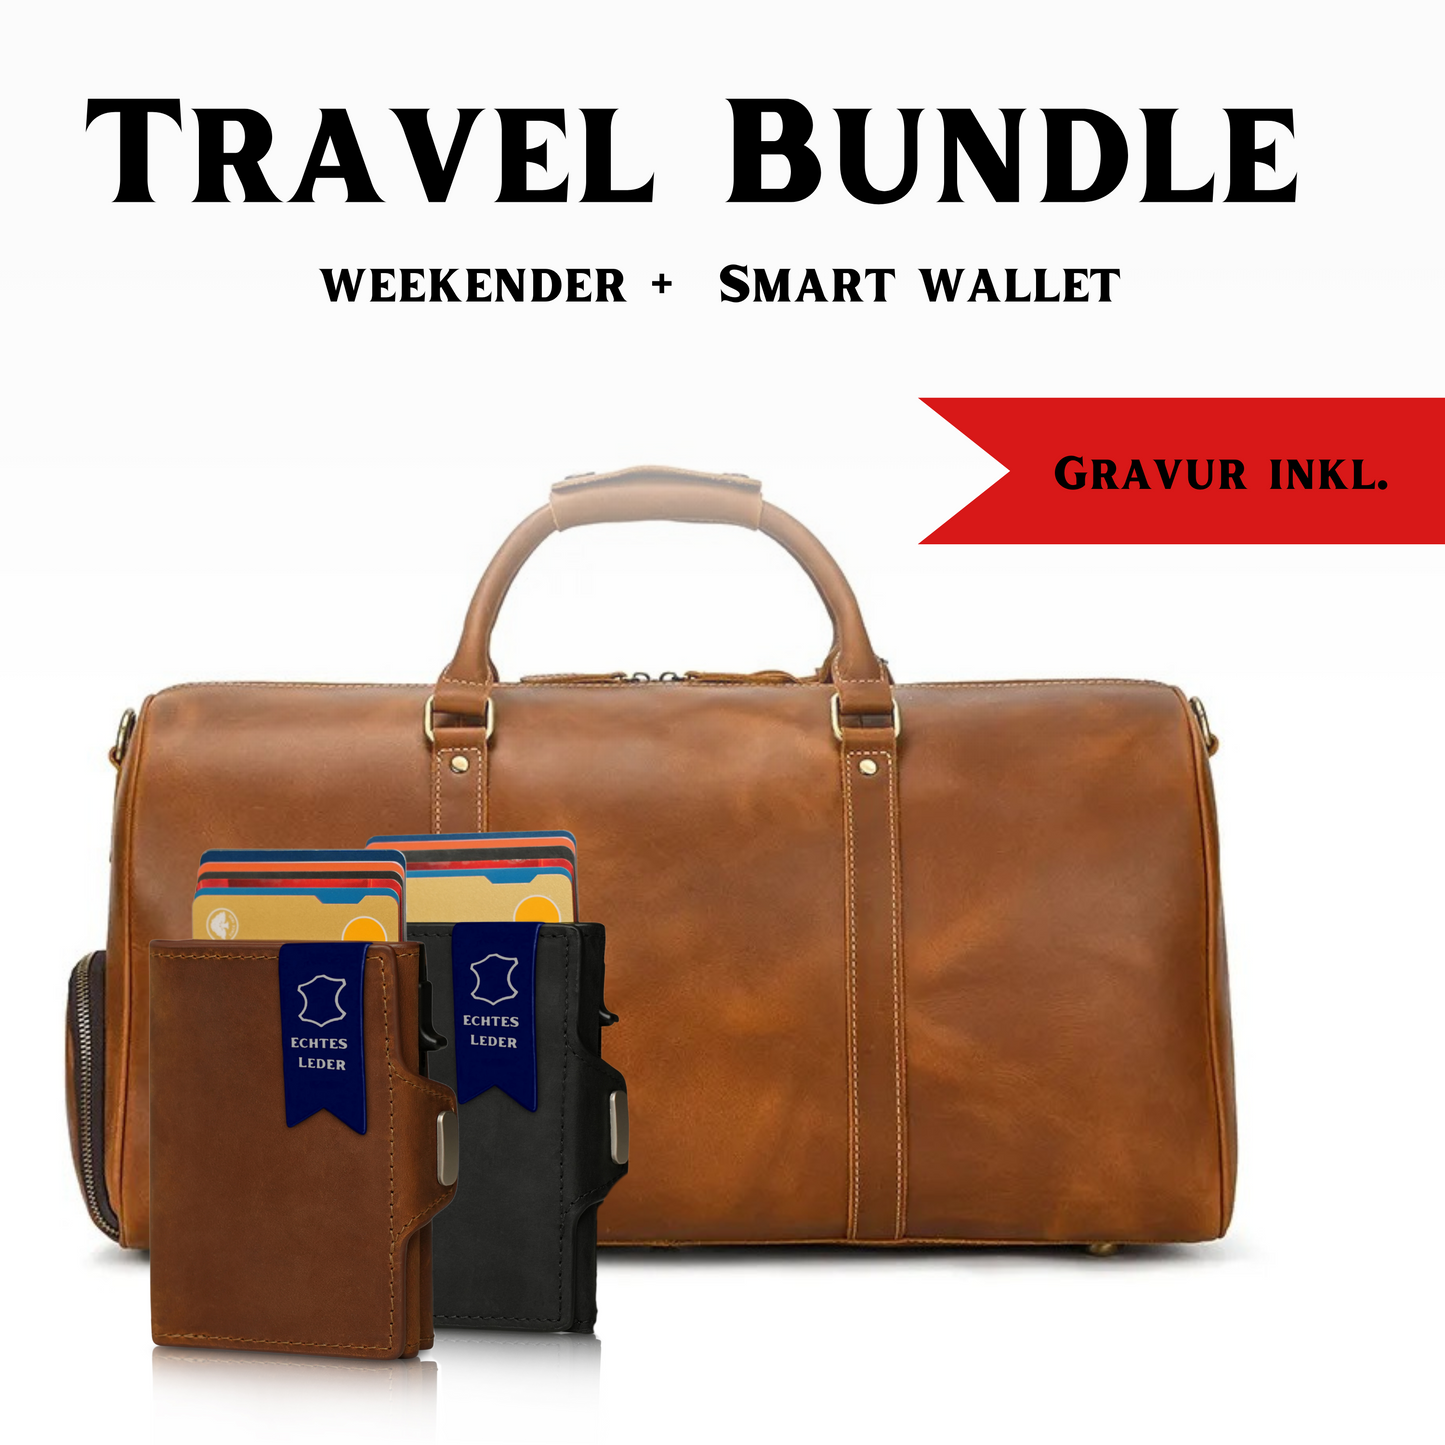 Travel Bundle: Weekender & Smart Wallet